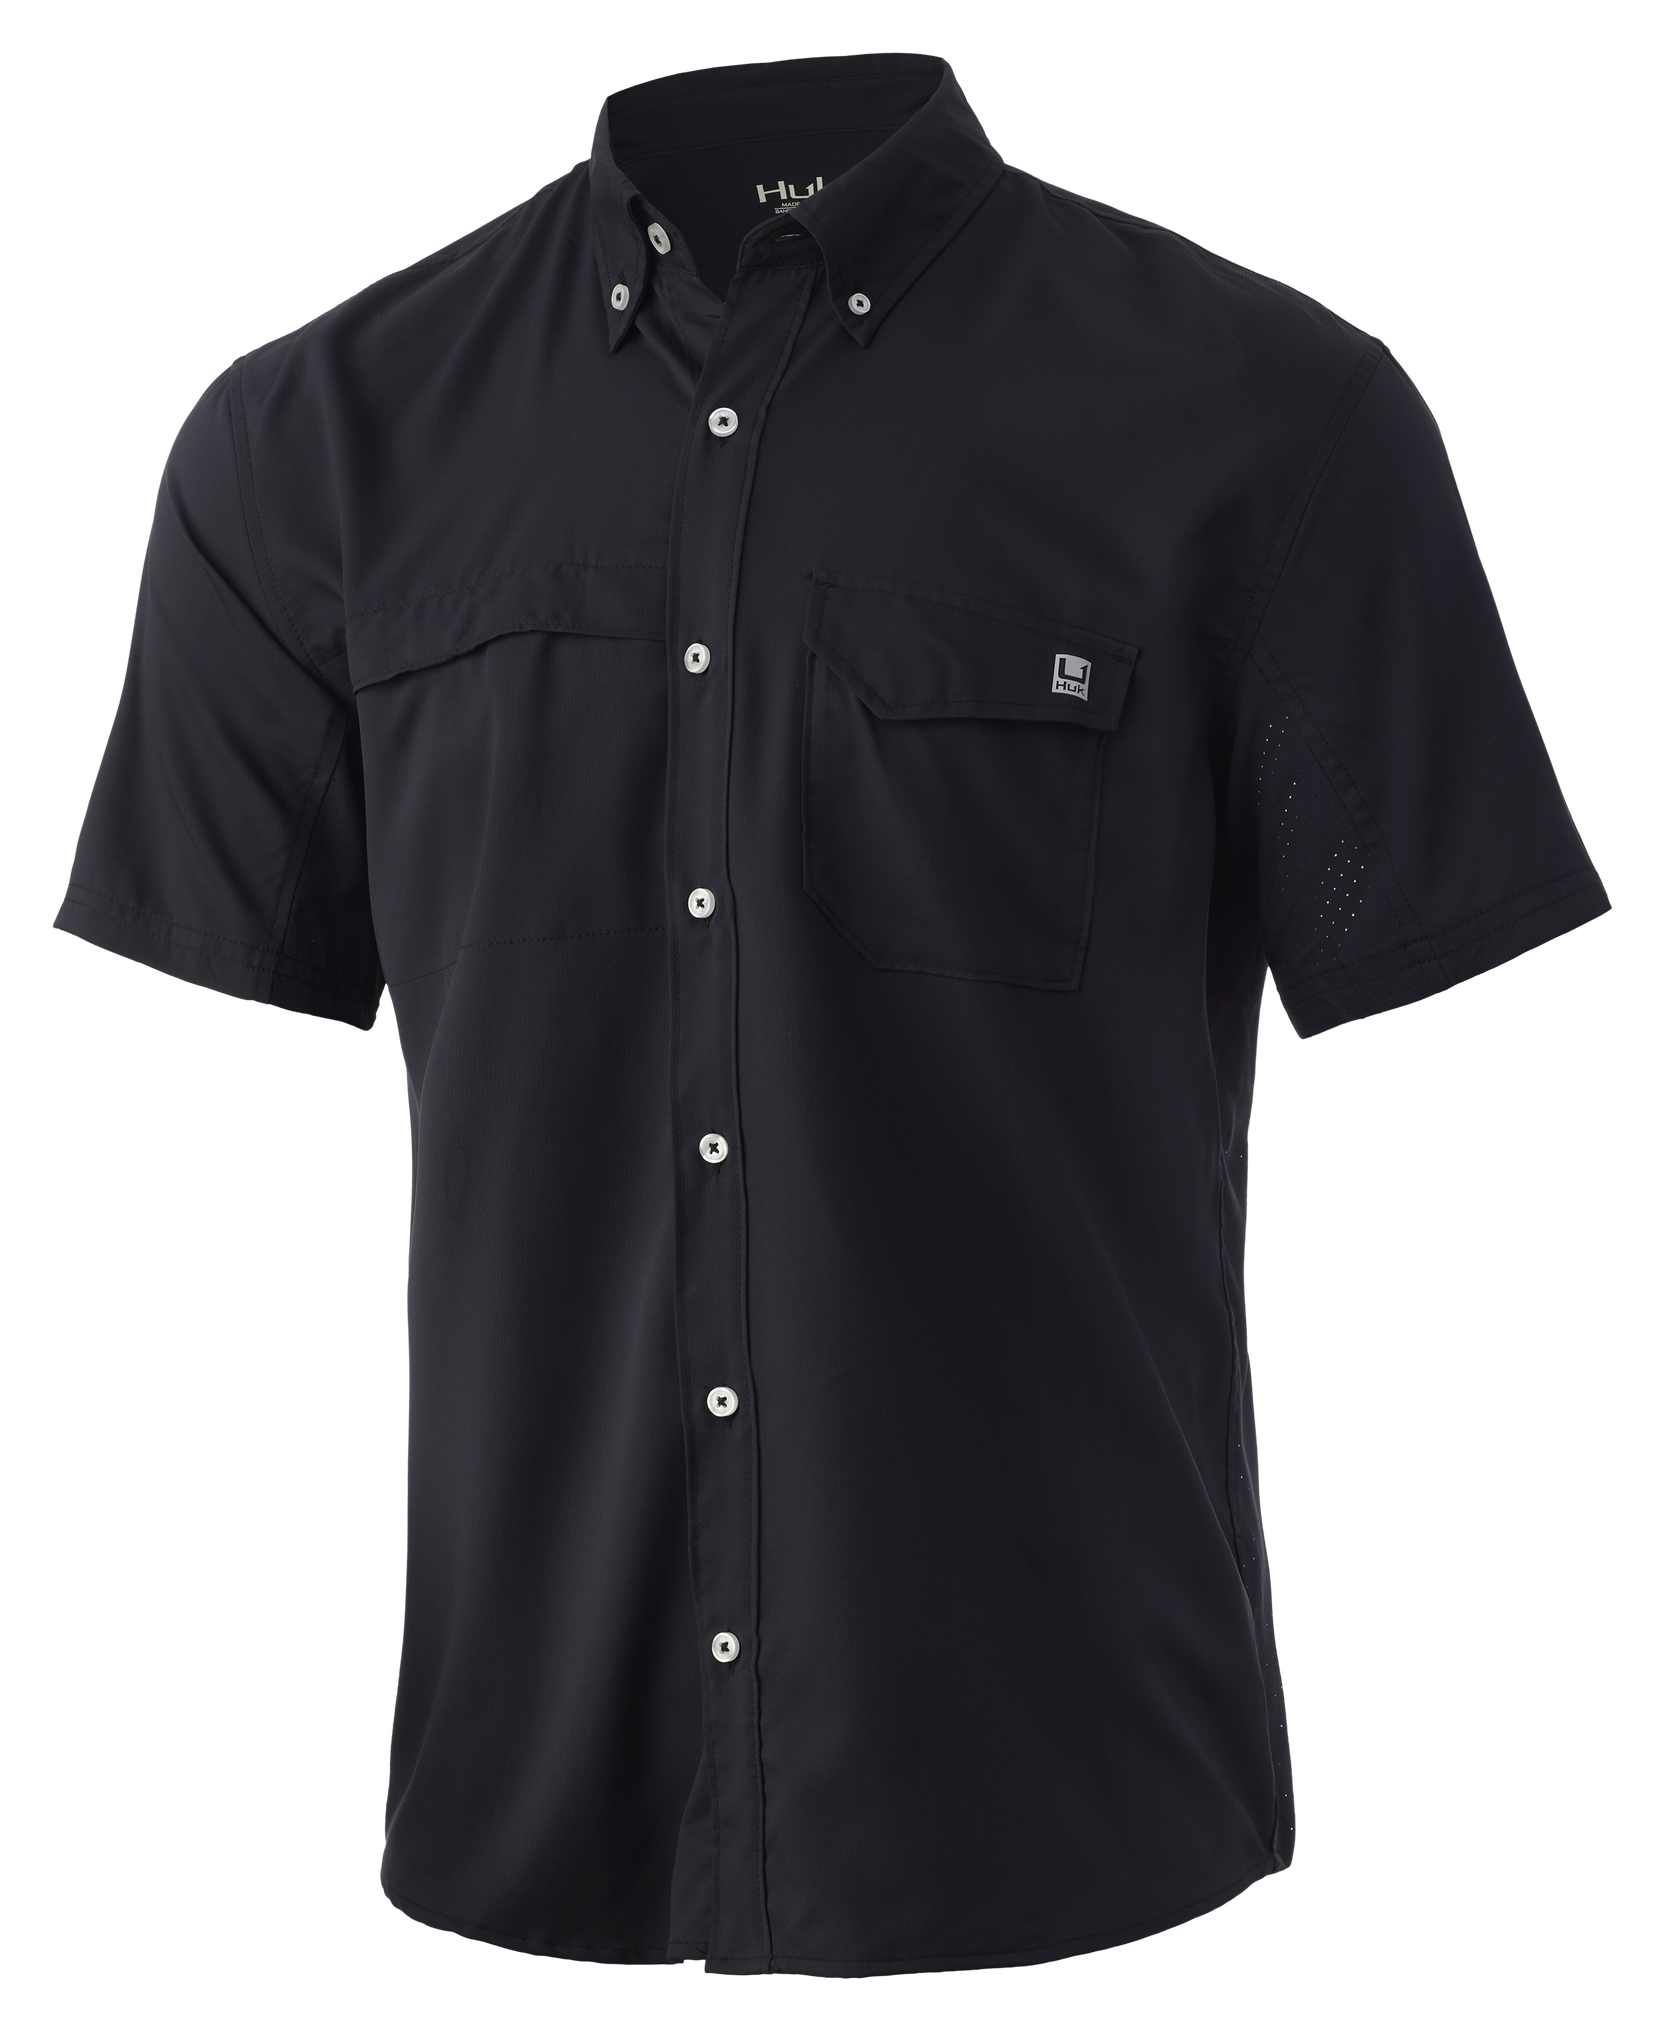 Huk Tide Point Short-Sleeve Shirt for Men